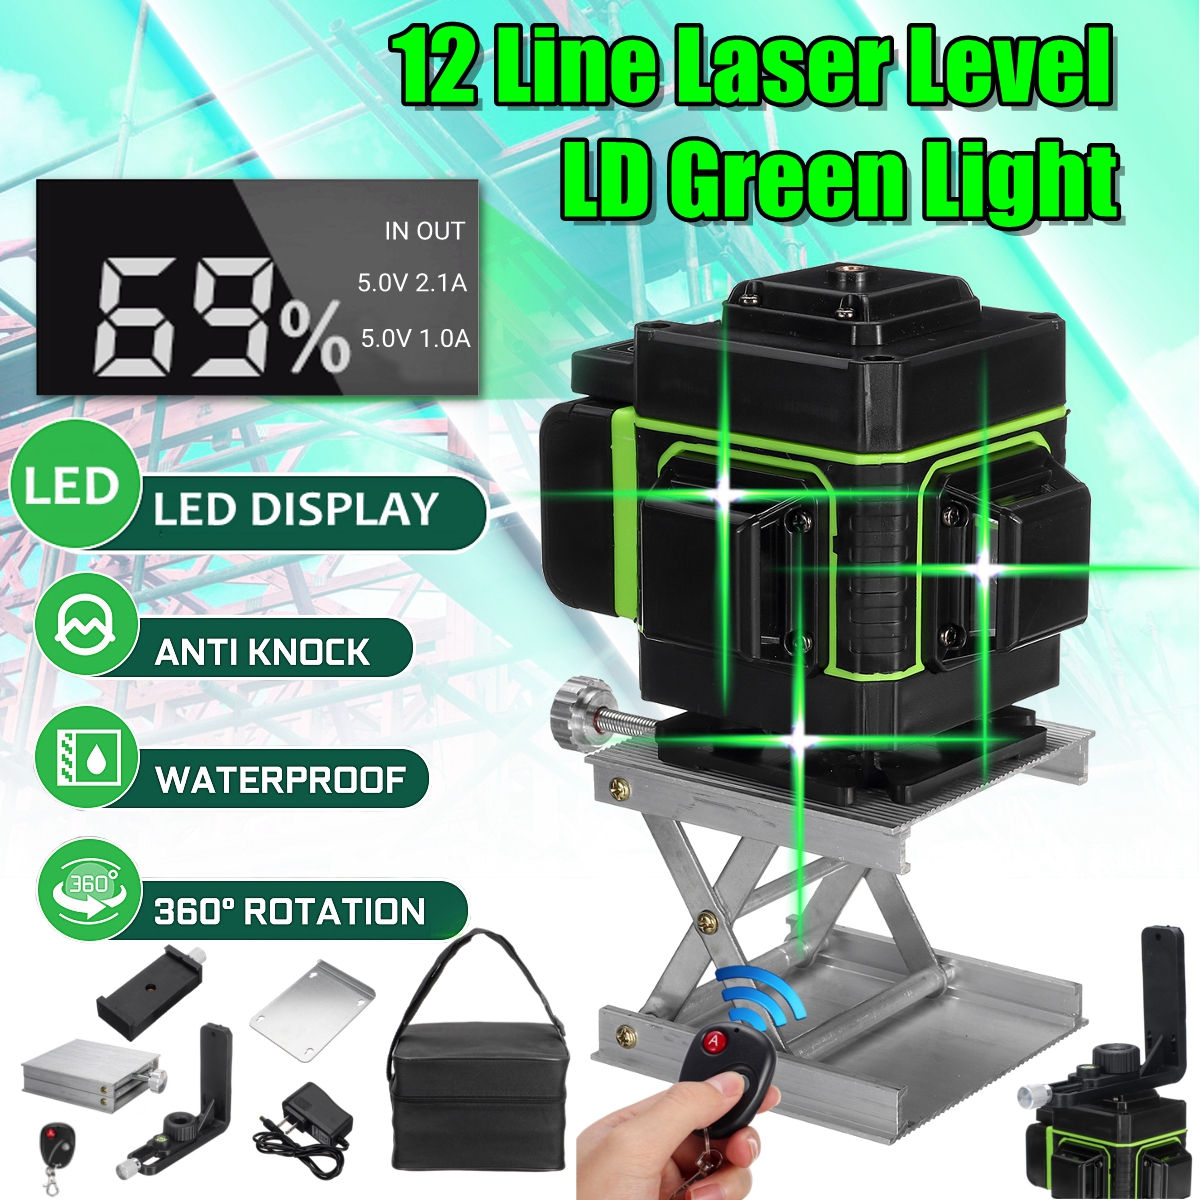 LED-Display-LD-Green-Light-Laser-Level-3D-360deg-12-Line-Cross-Self-Leveling-Measure-Tool-1542640-1